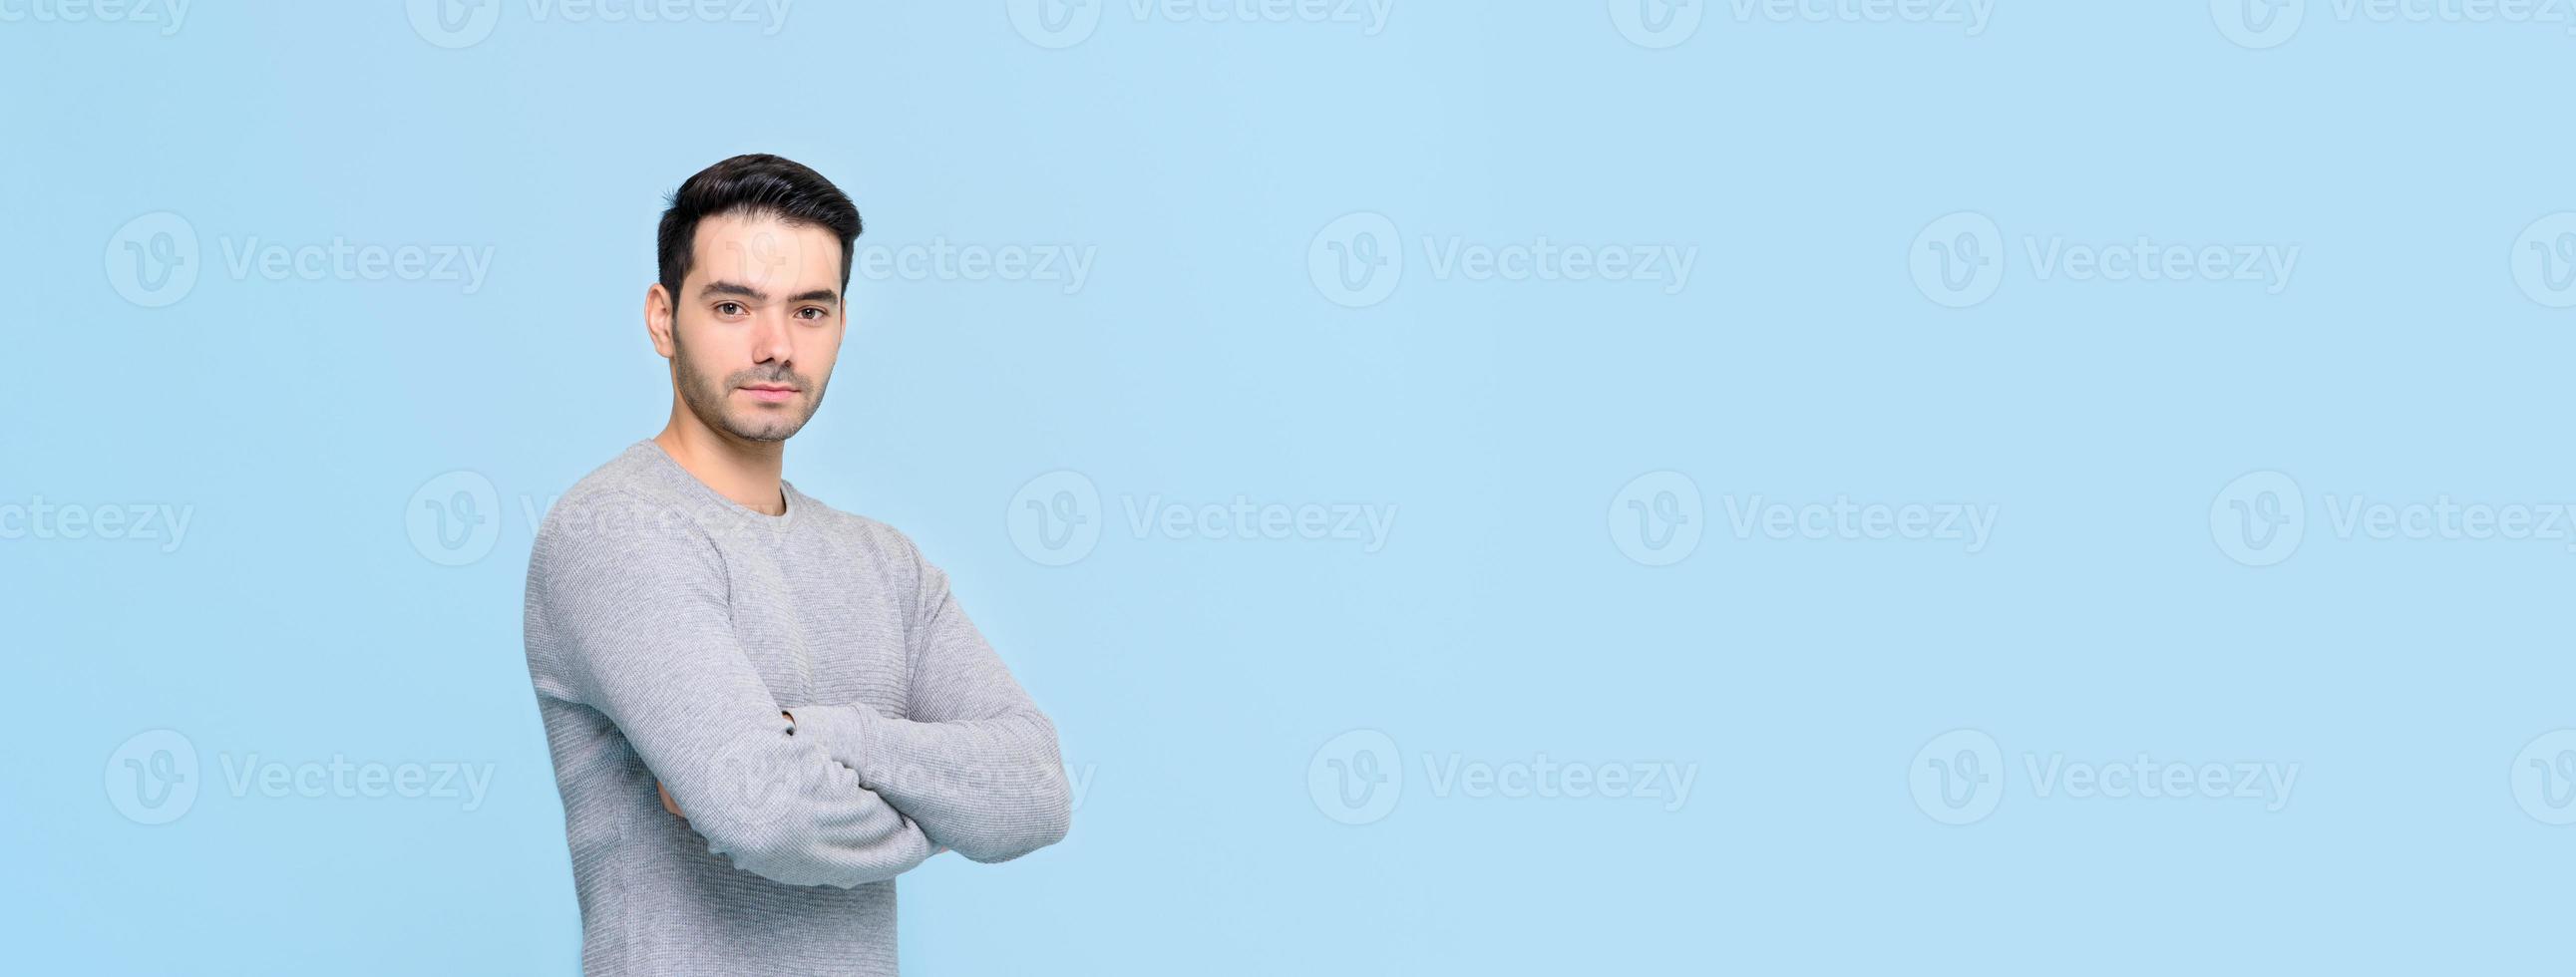 bel homme confiant en t-shirt gris décontracté faisant un geste croisé bras isolé sur fond de bannière bleu clair avec espace de copie photo